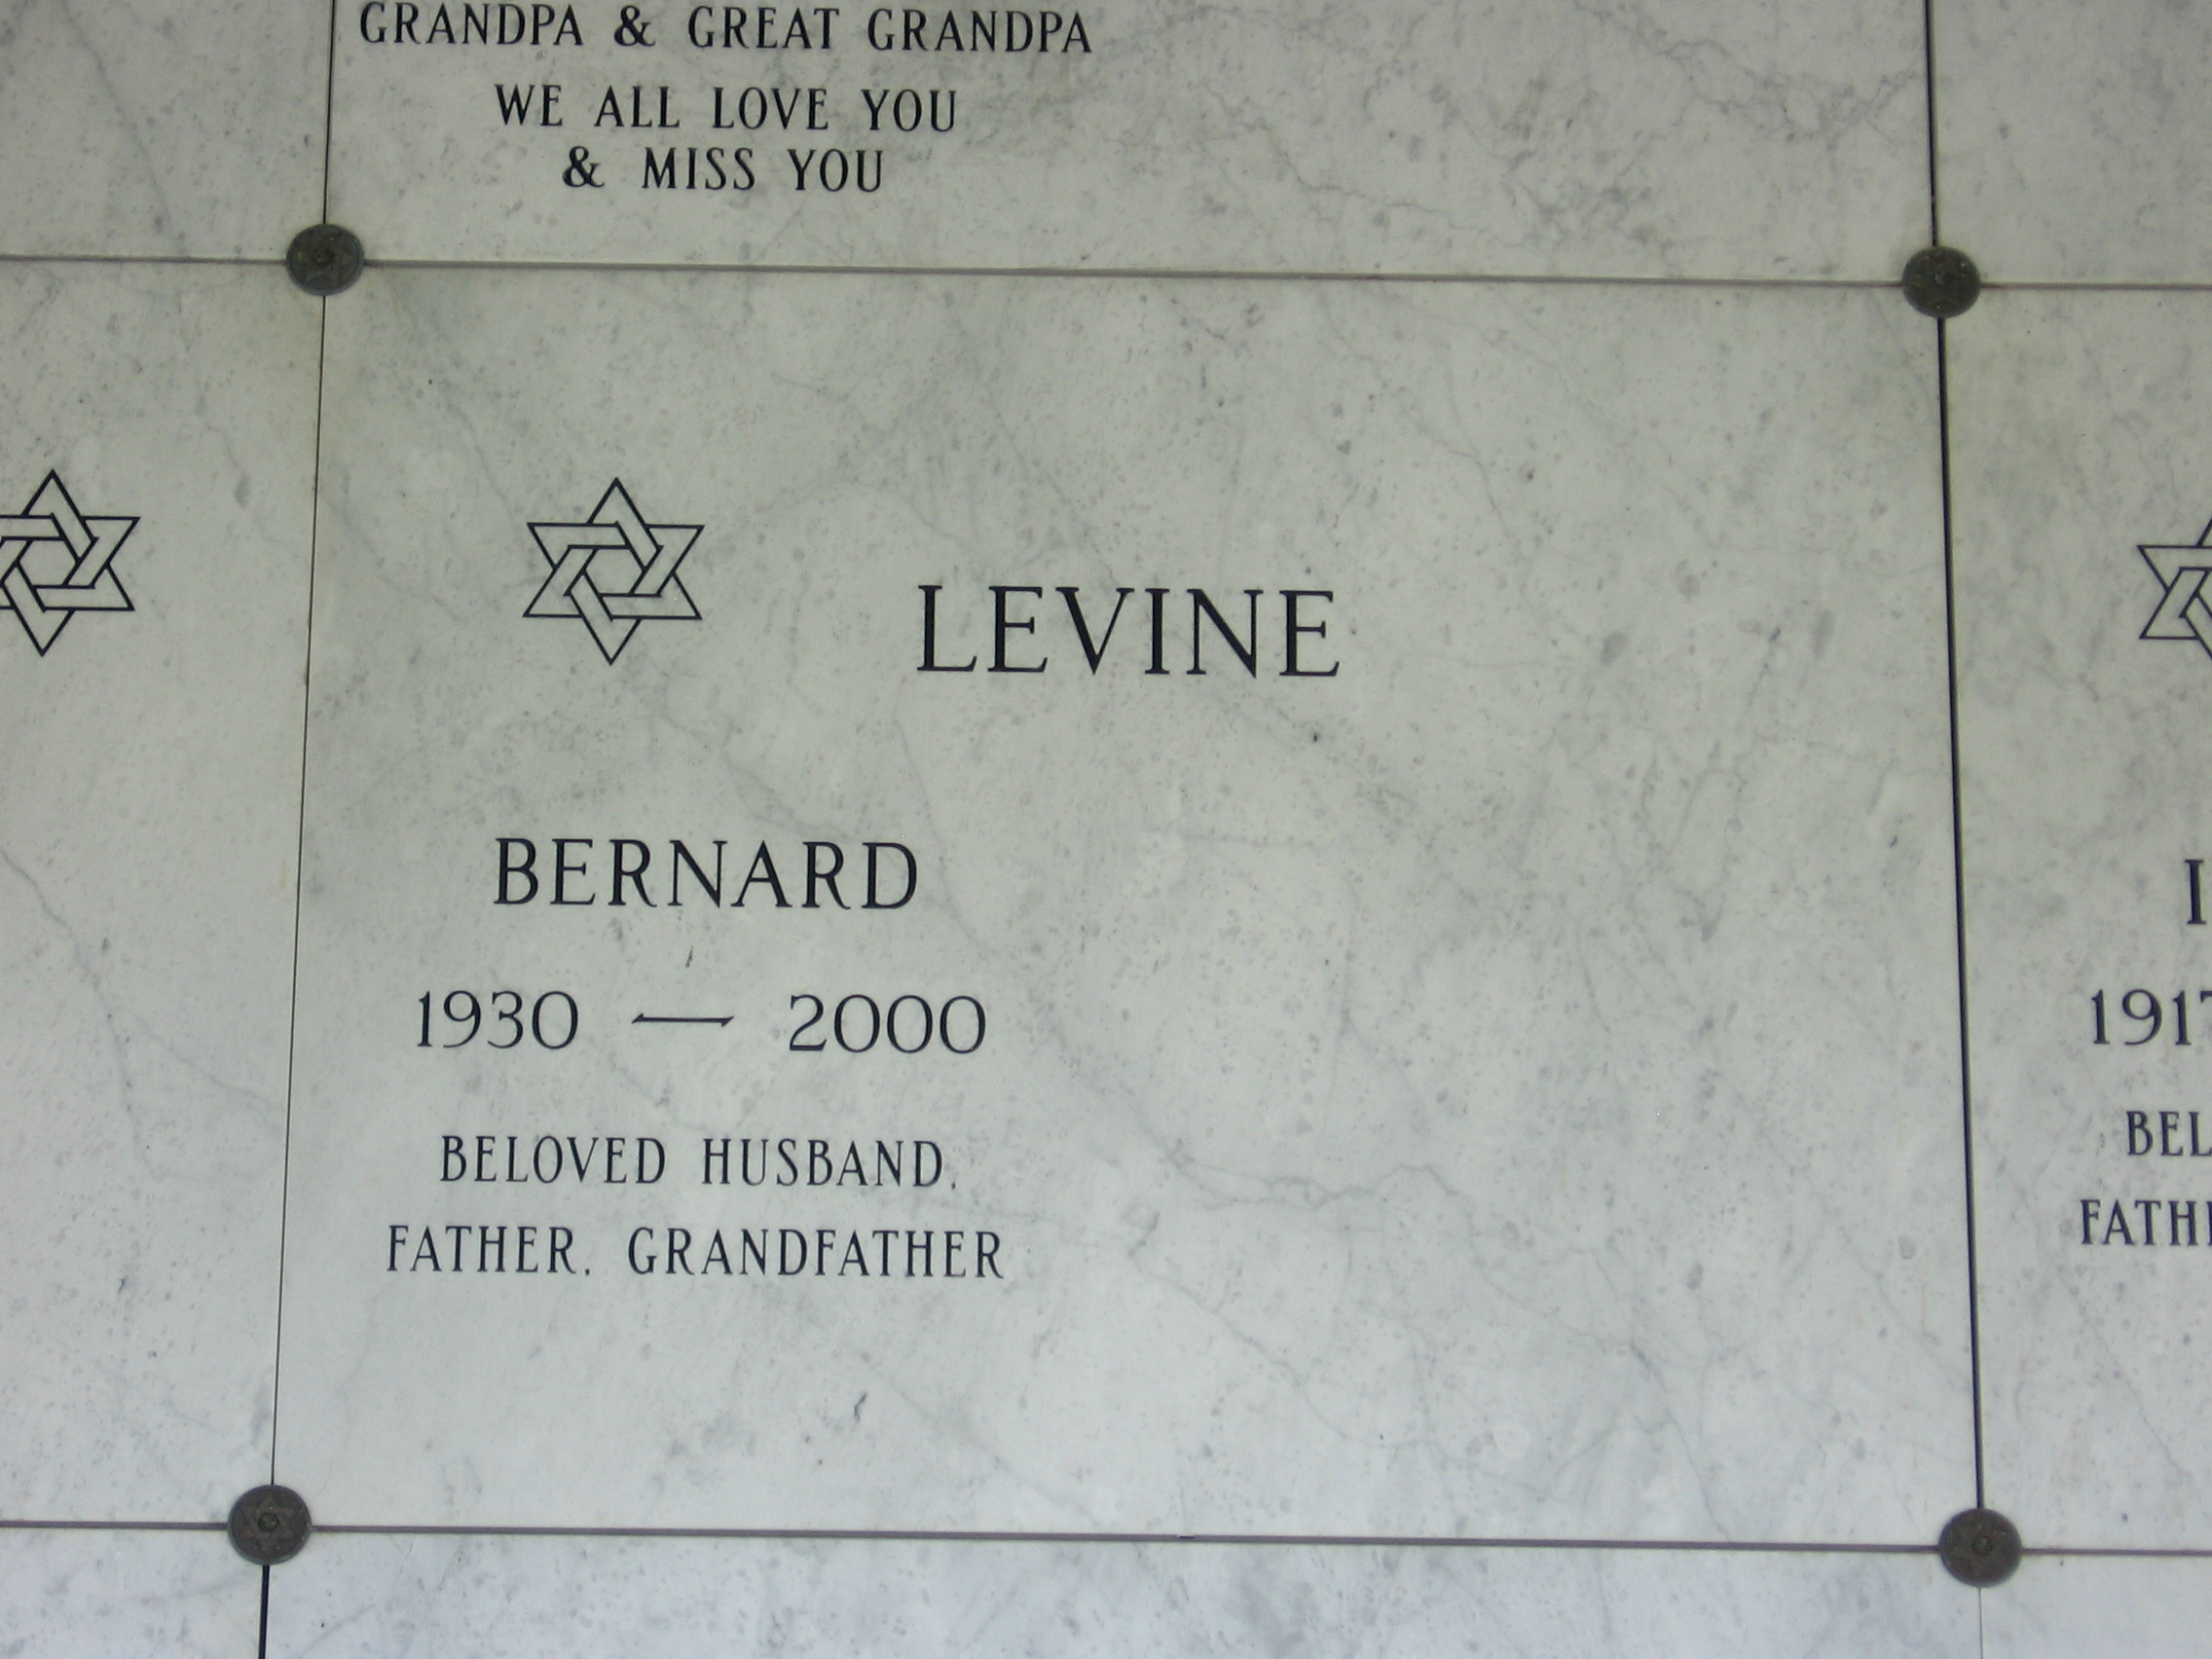 Bernard Levine